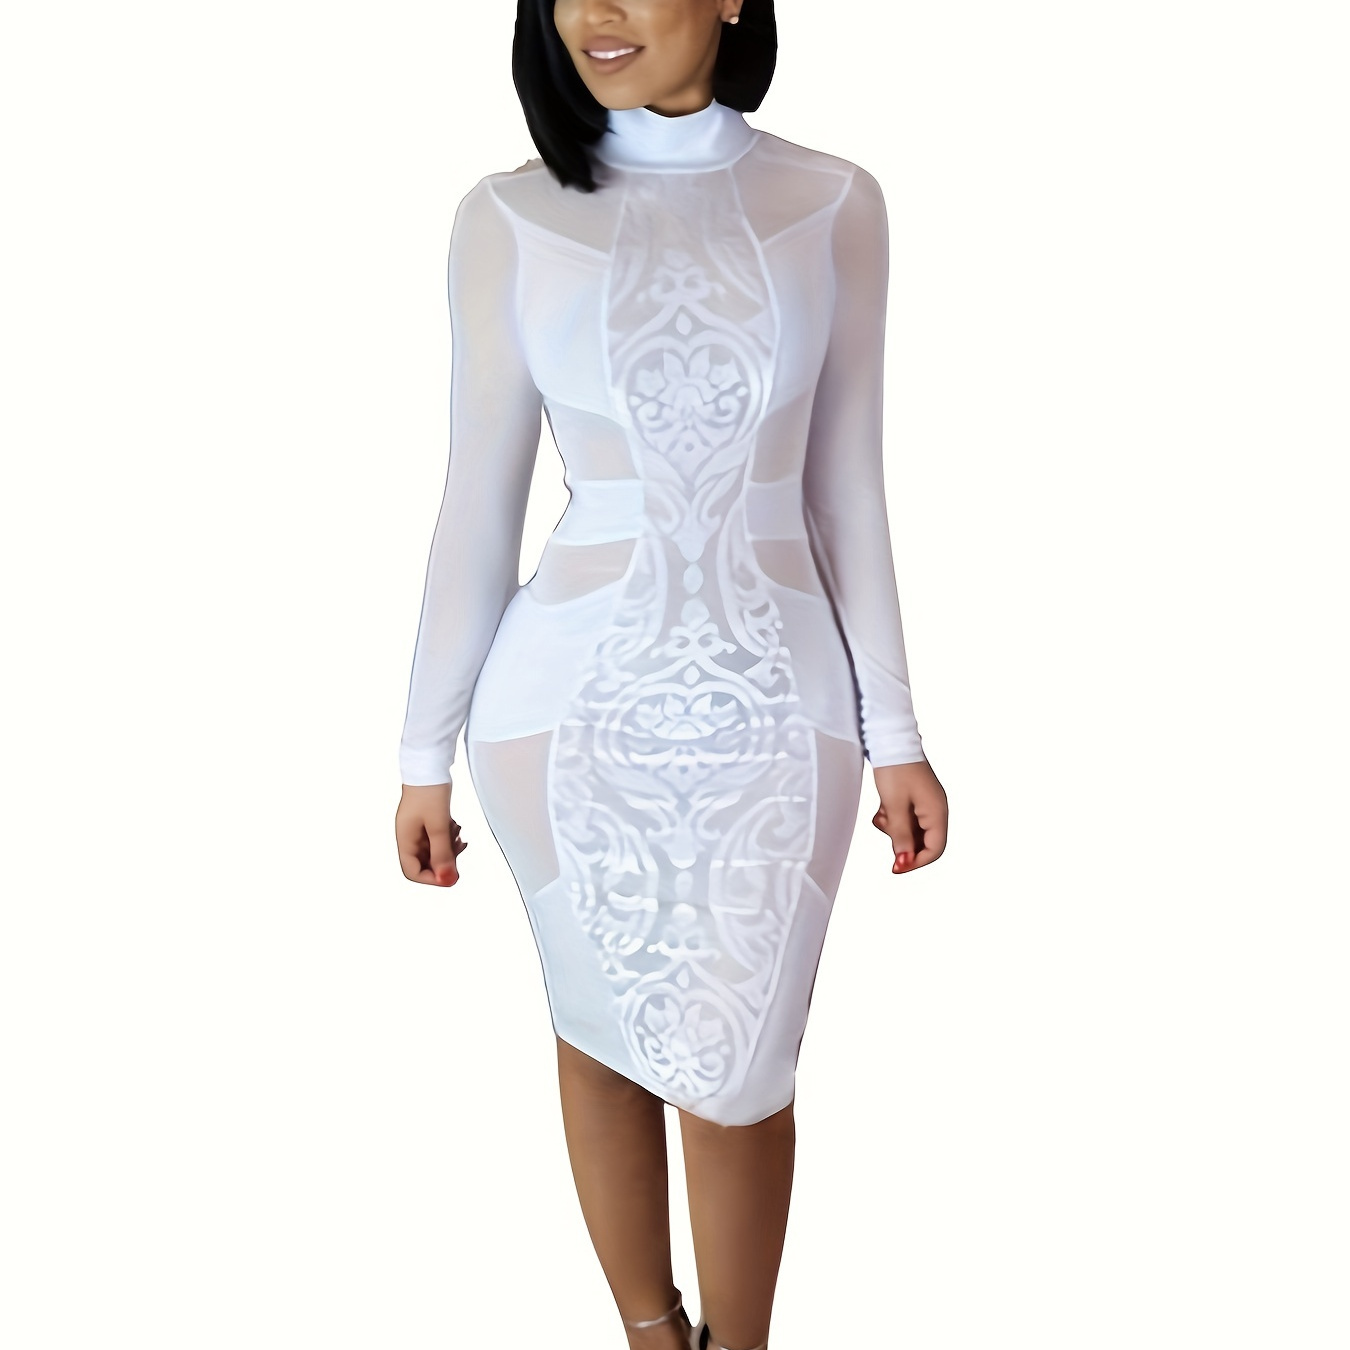 

Mesh Sheer Mock Neck Bodycon Dress, Elegant Long Sleeve Dress For Spring & Fall, Women's Clothing